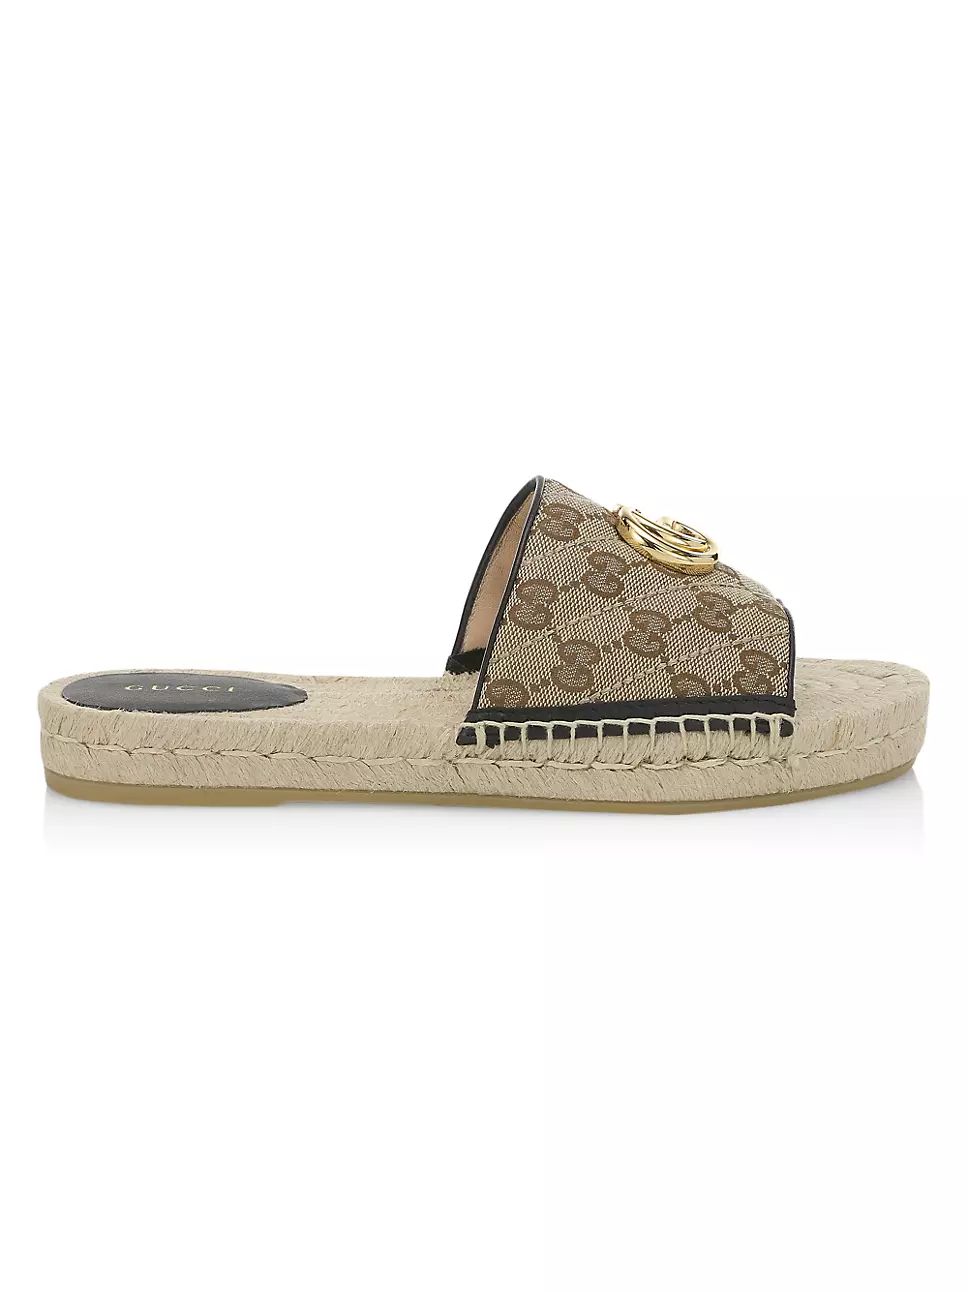 Gucci GG Matelassé Canvas Espadrille Sandal | Saks Fifth Avenue